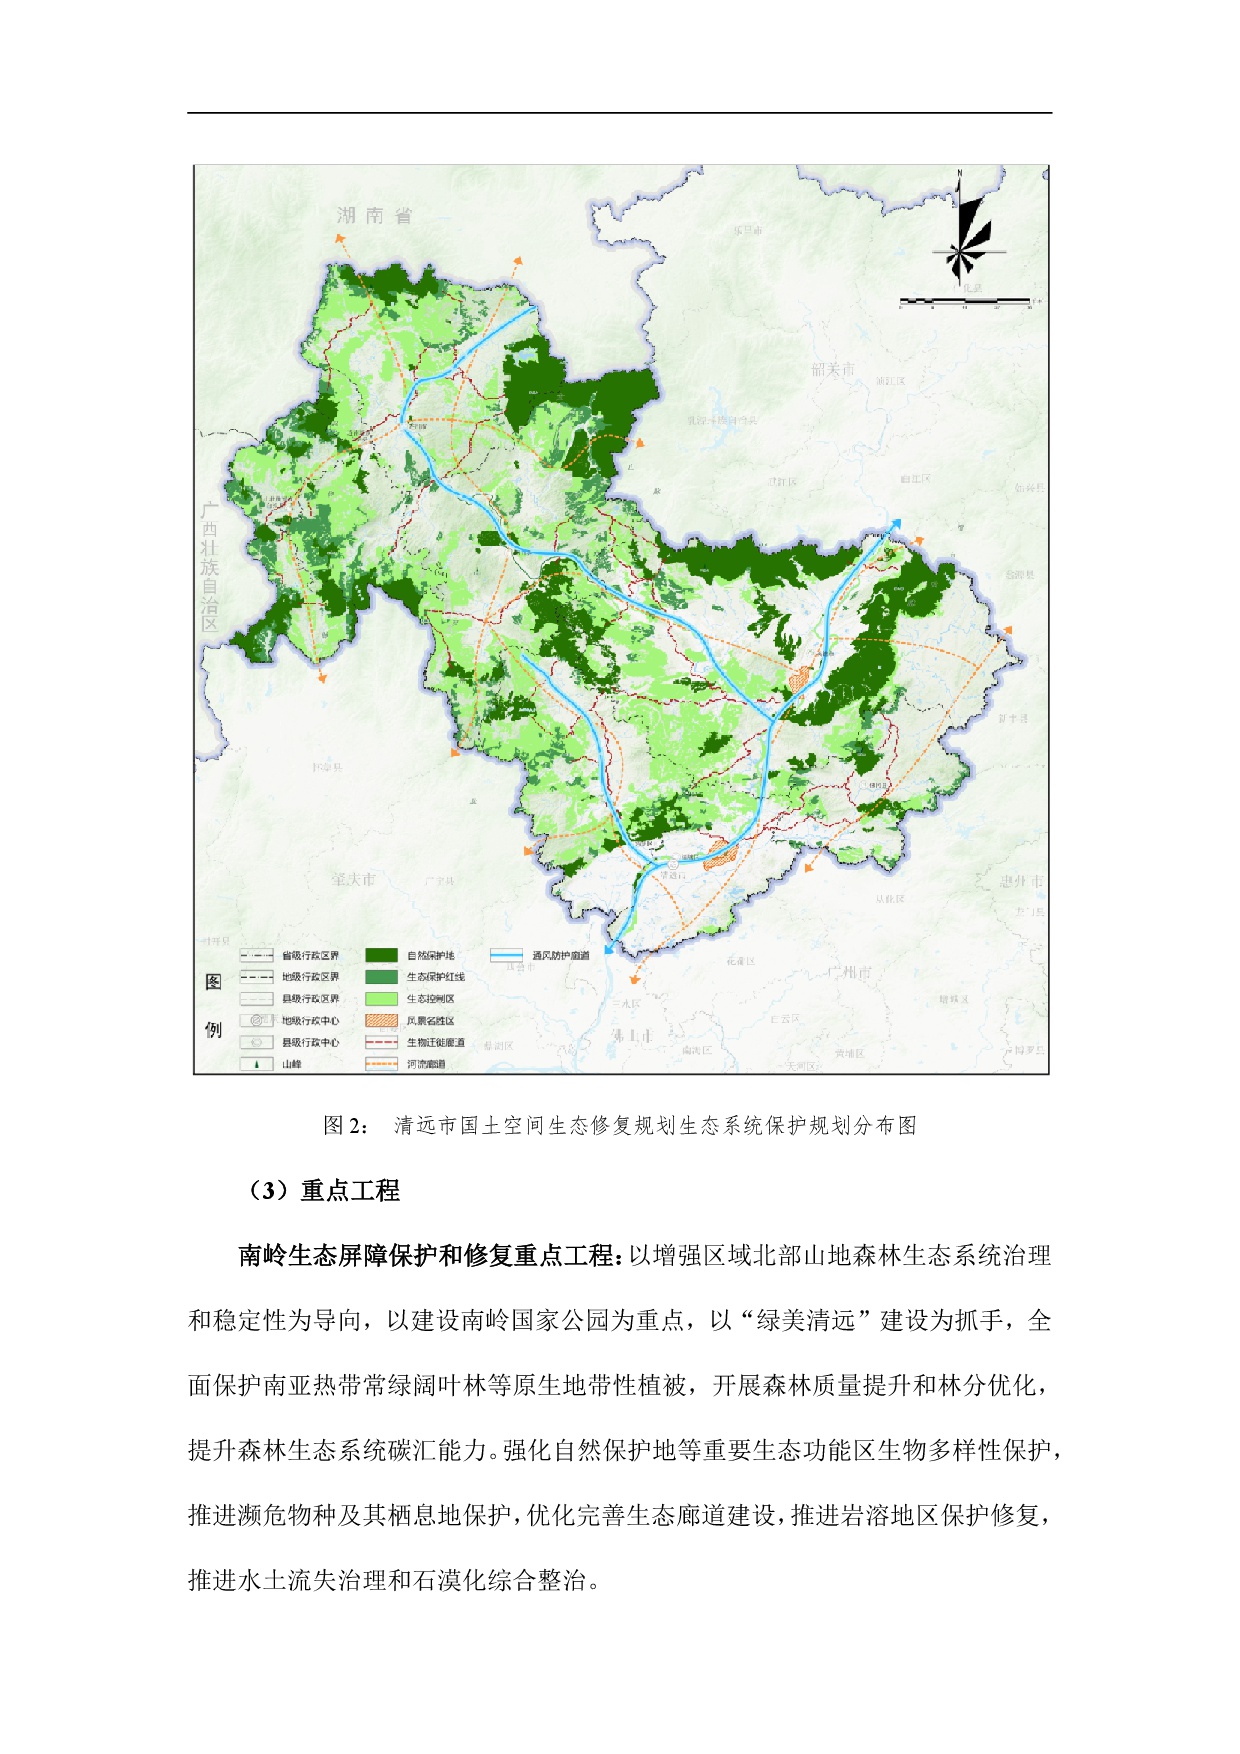 网站公示-《清远市国土空间生态修复规划（2021-2035）年》-007.jpg